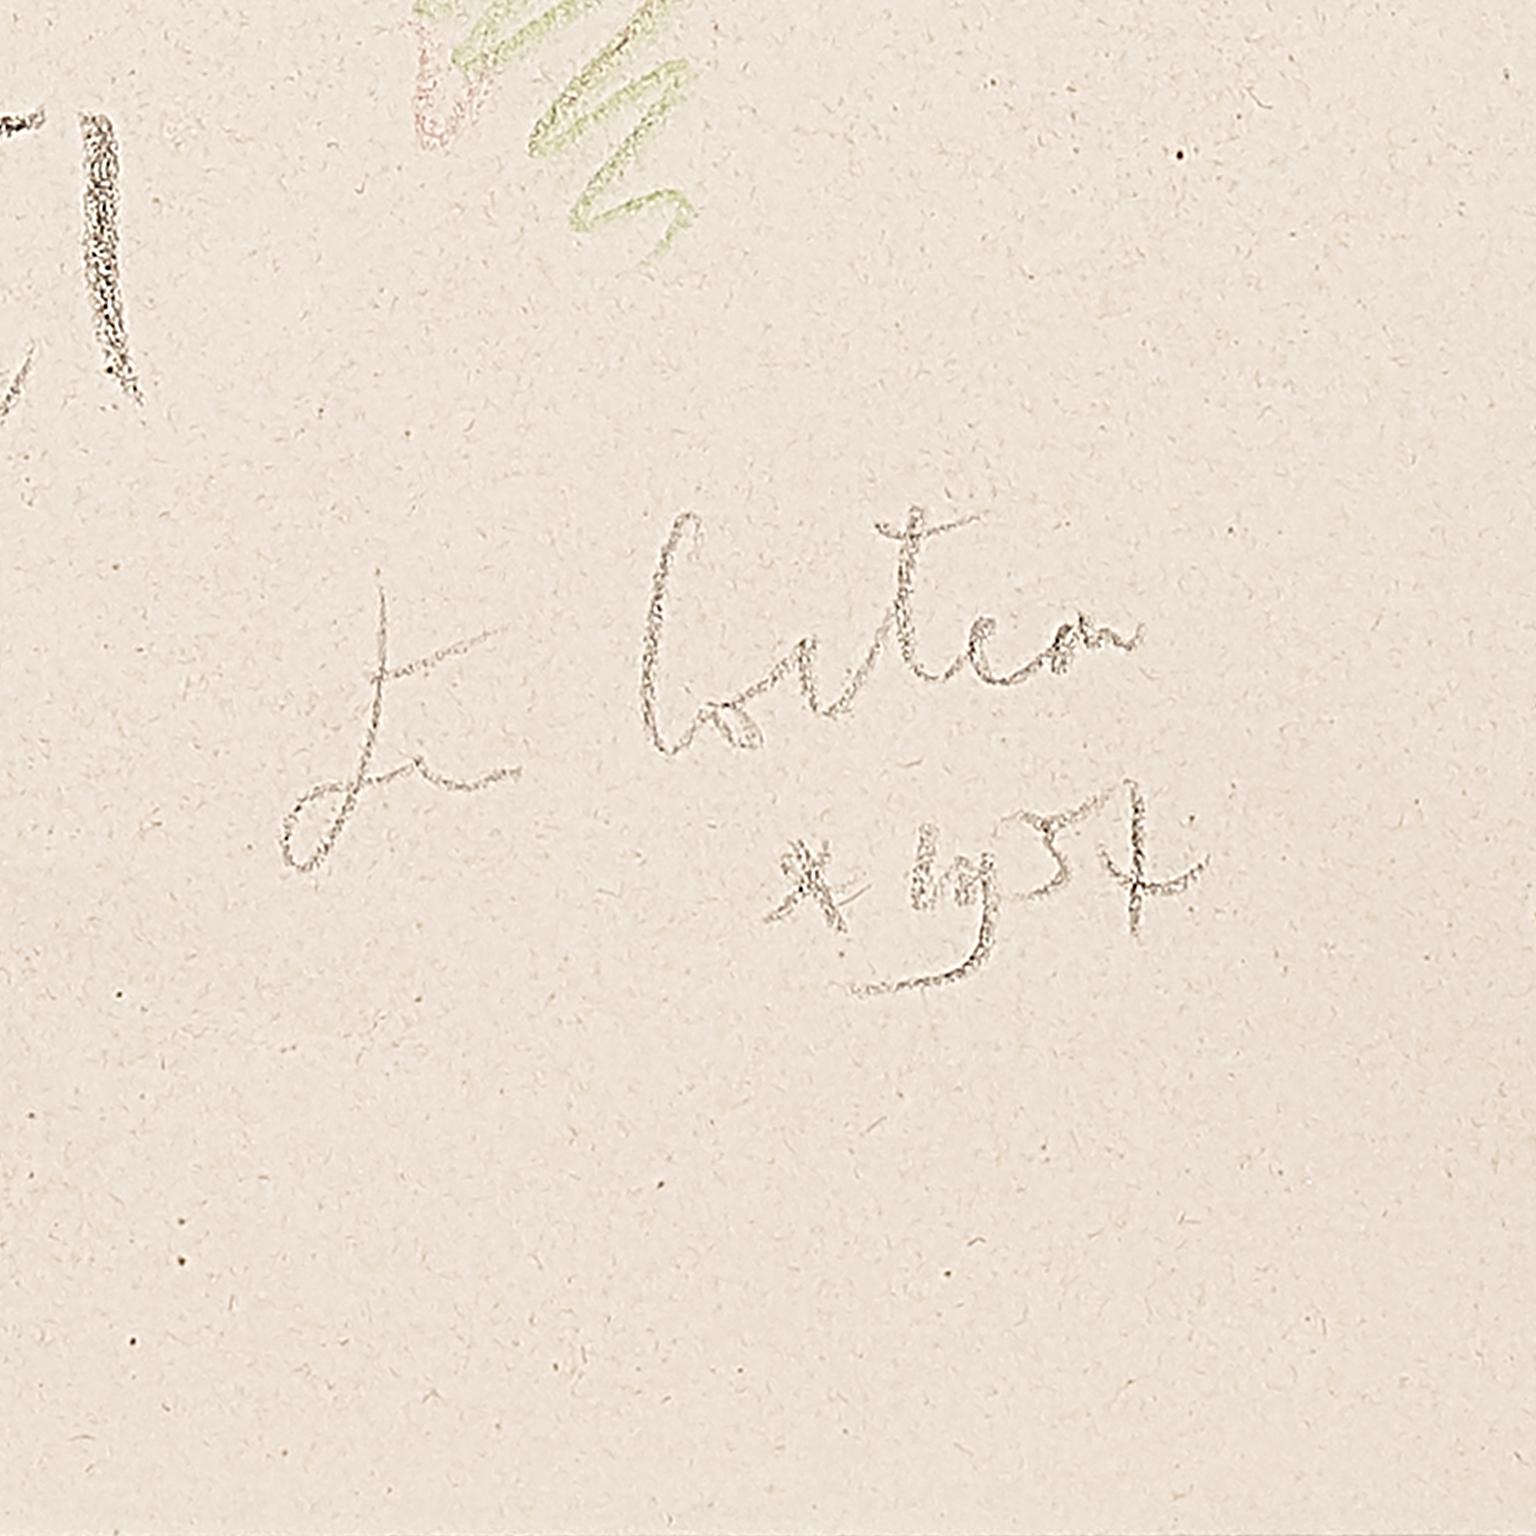 originalzeichnung von Jean Cocteau  aus der Sammlung Edouard DERMIT . 
signiert und datiert 1957 . gerahmt .